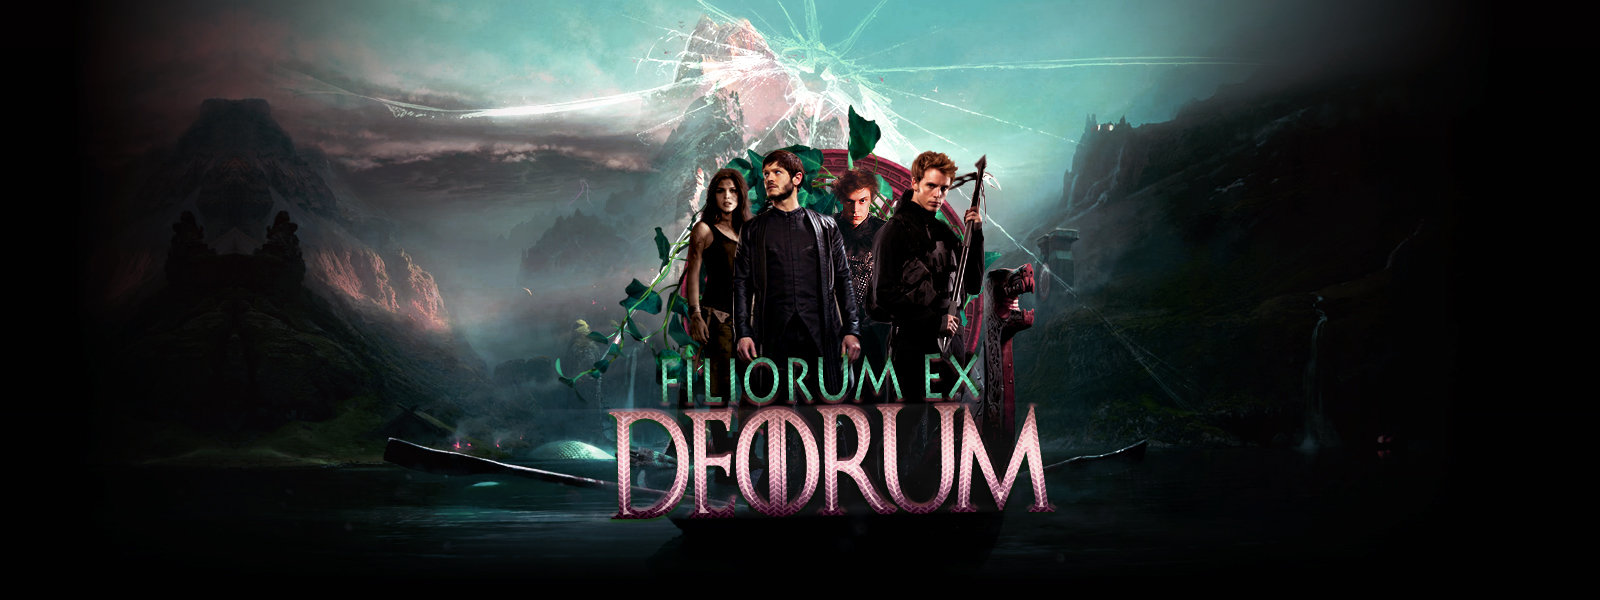 Tag 08 sur Filiorum ex Deorum B3eg